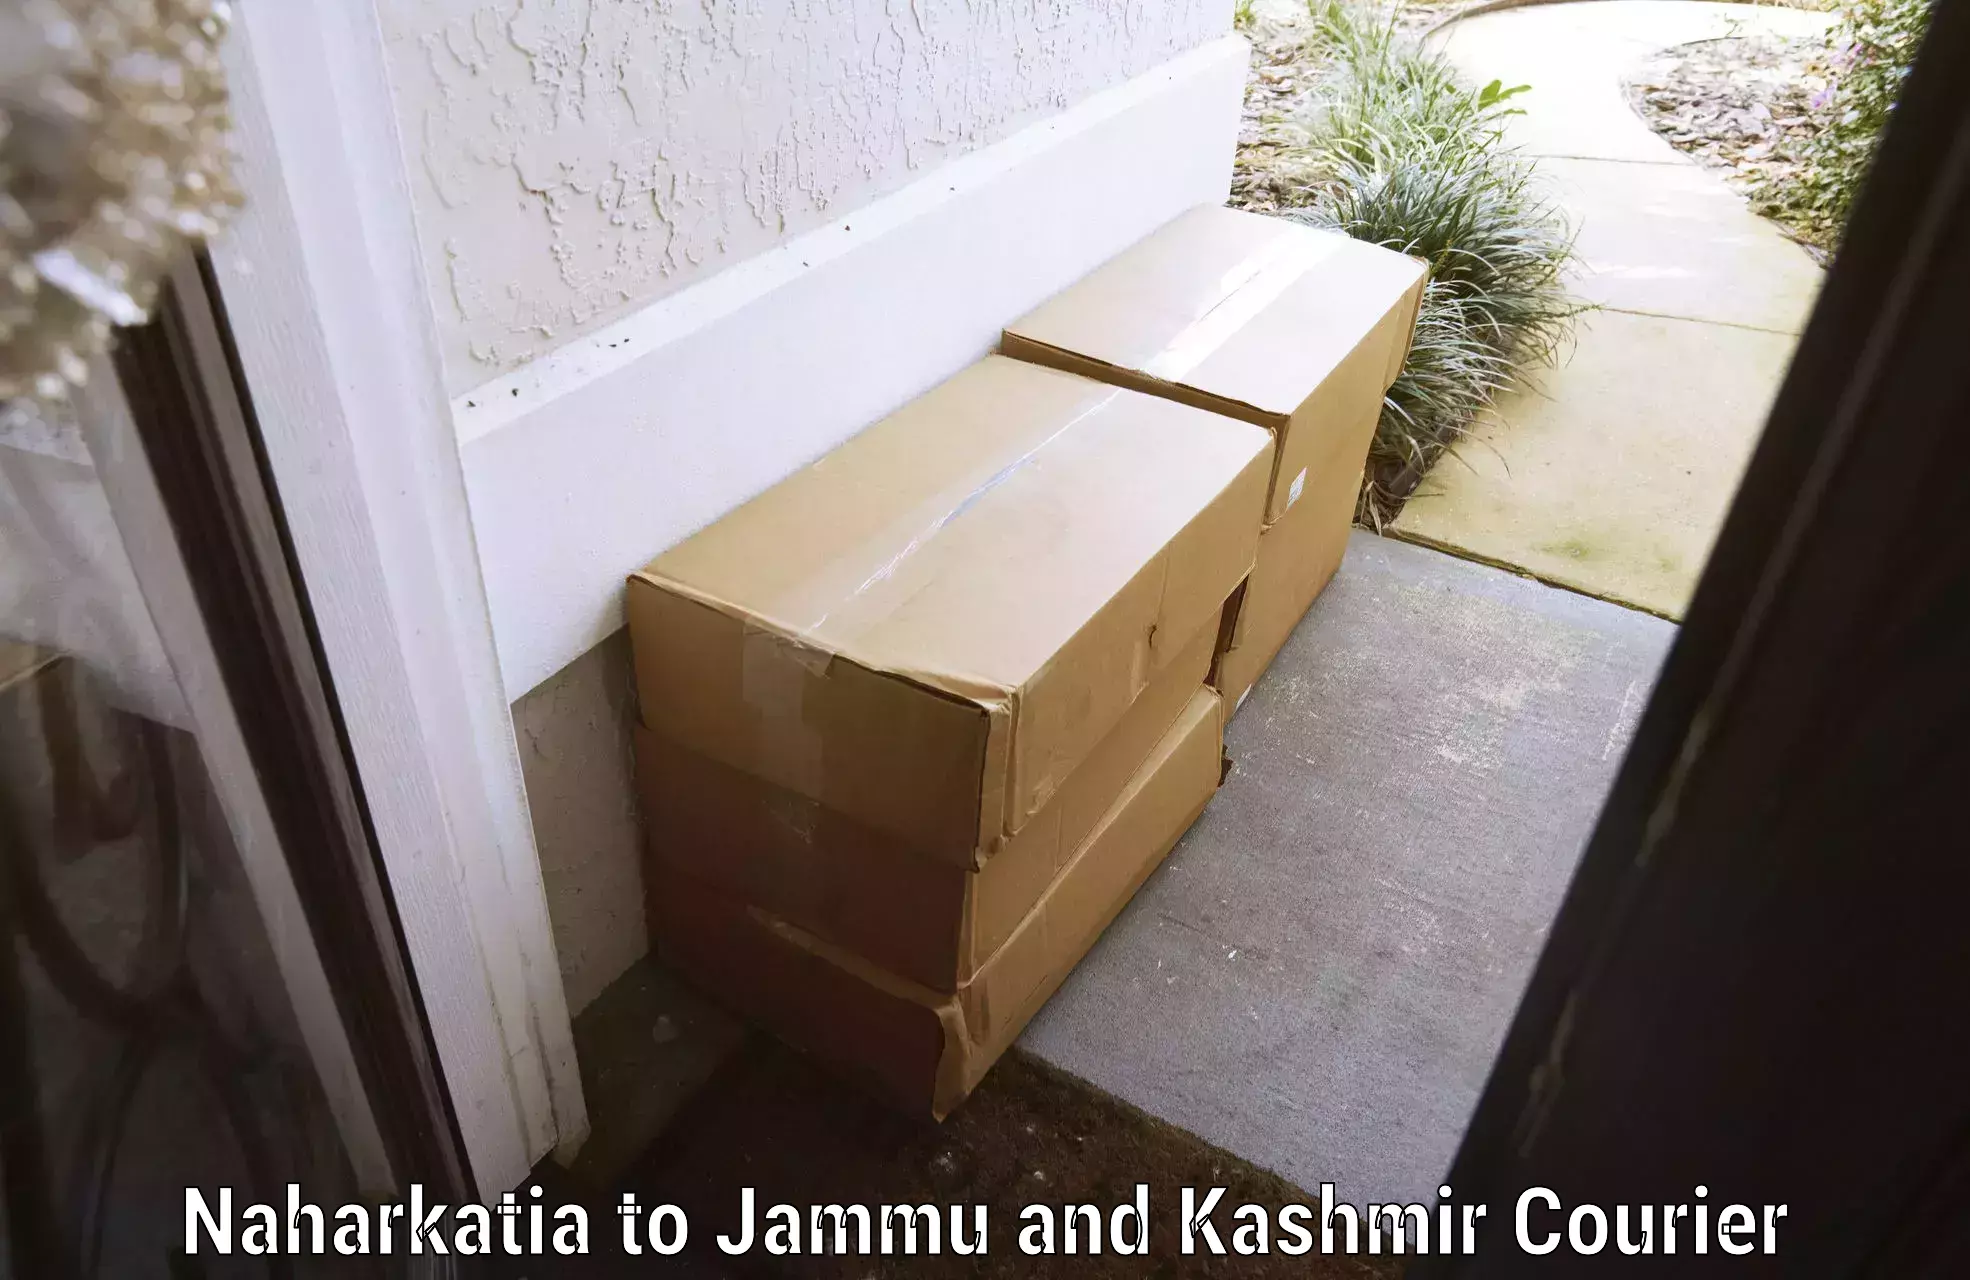 Same day baggage transport Naharkatia to Jammu and Kashmir